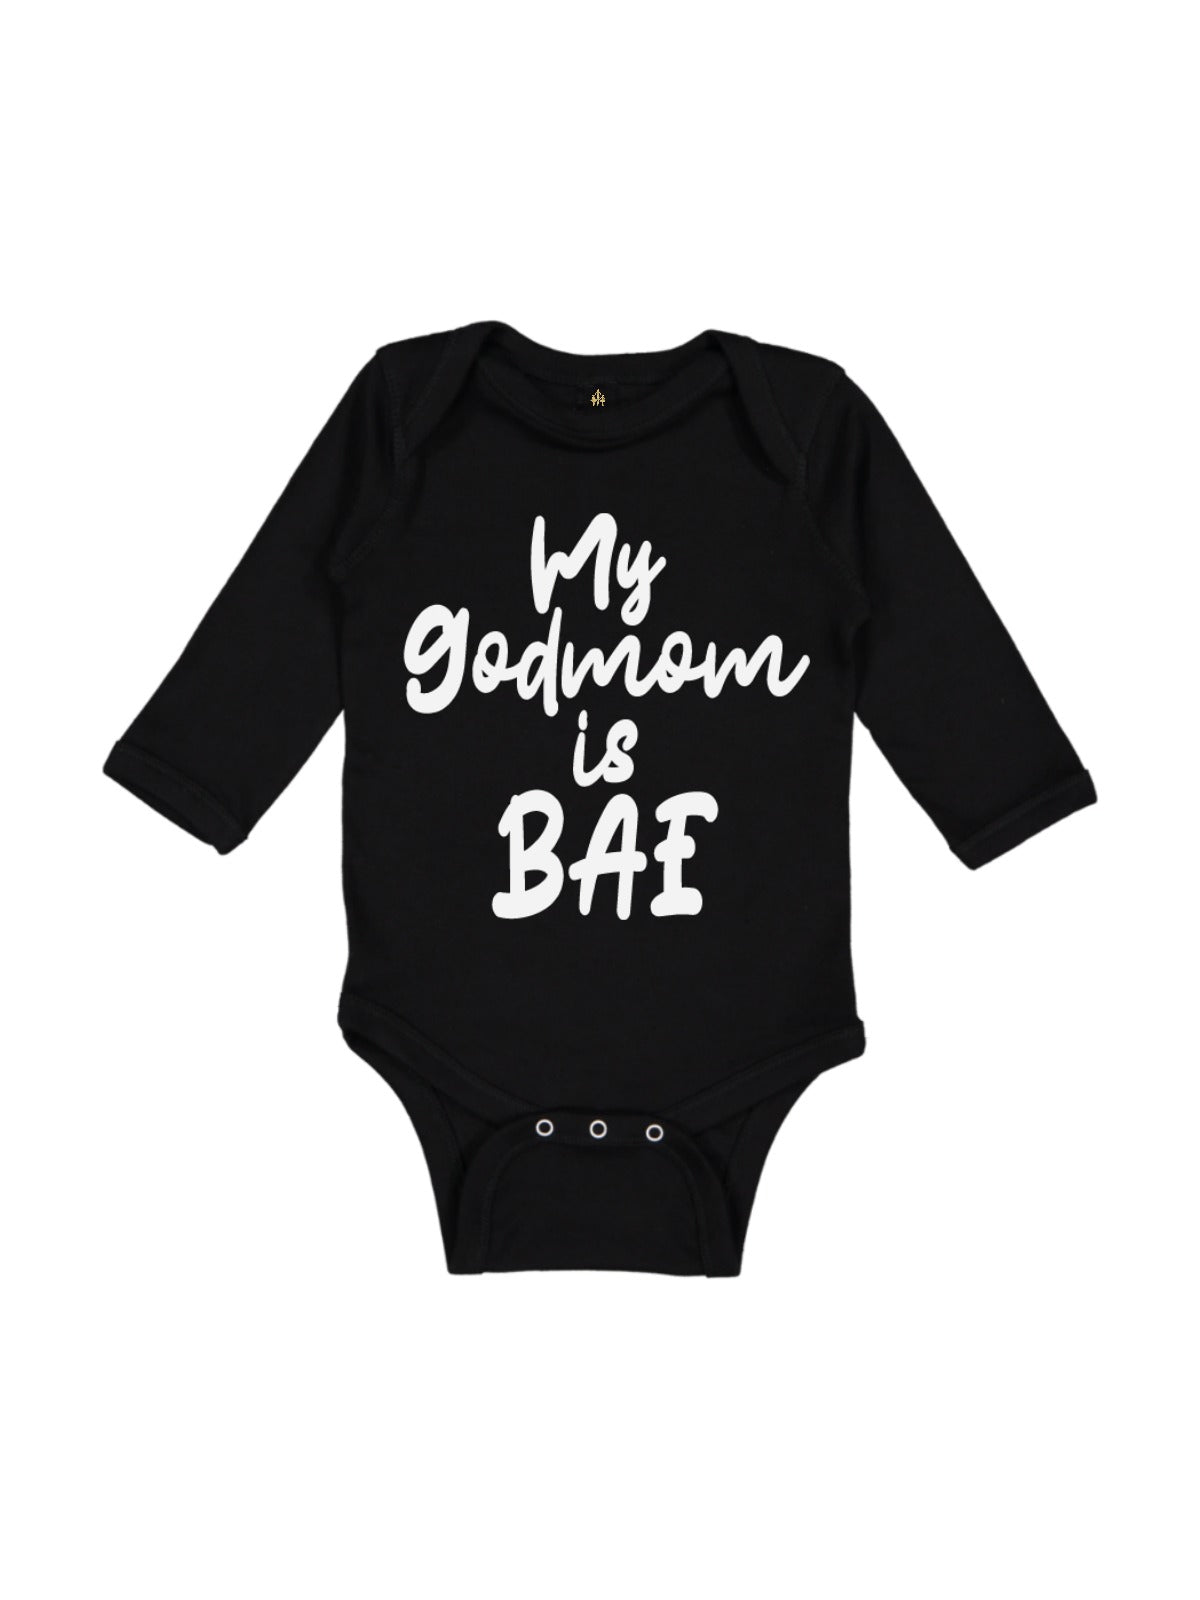 god mom baby bodysuit gift